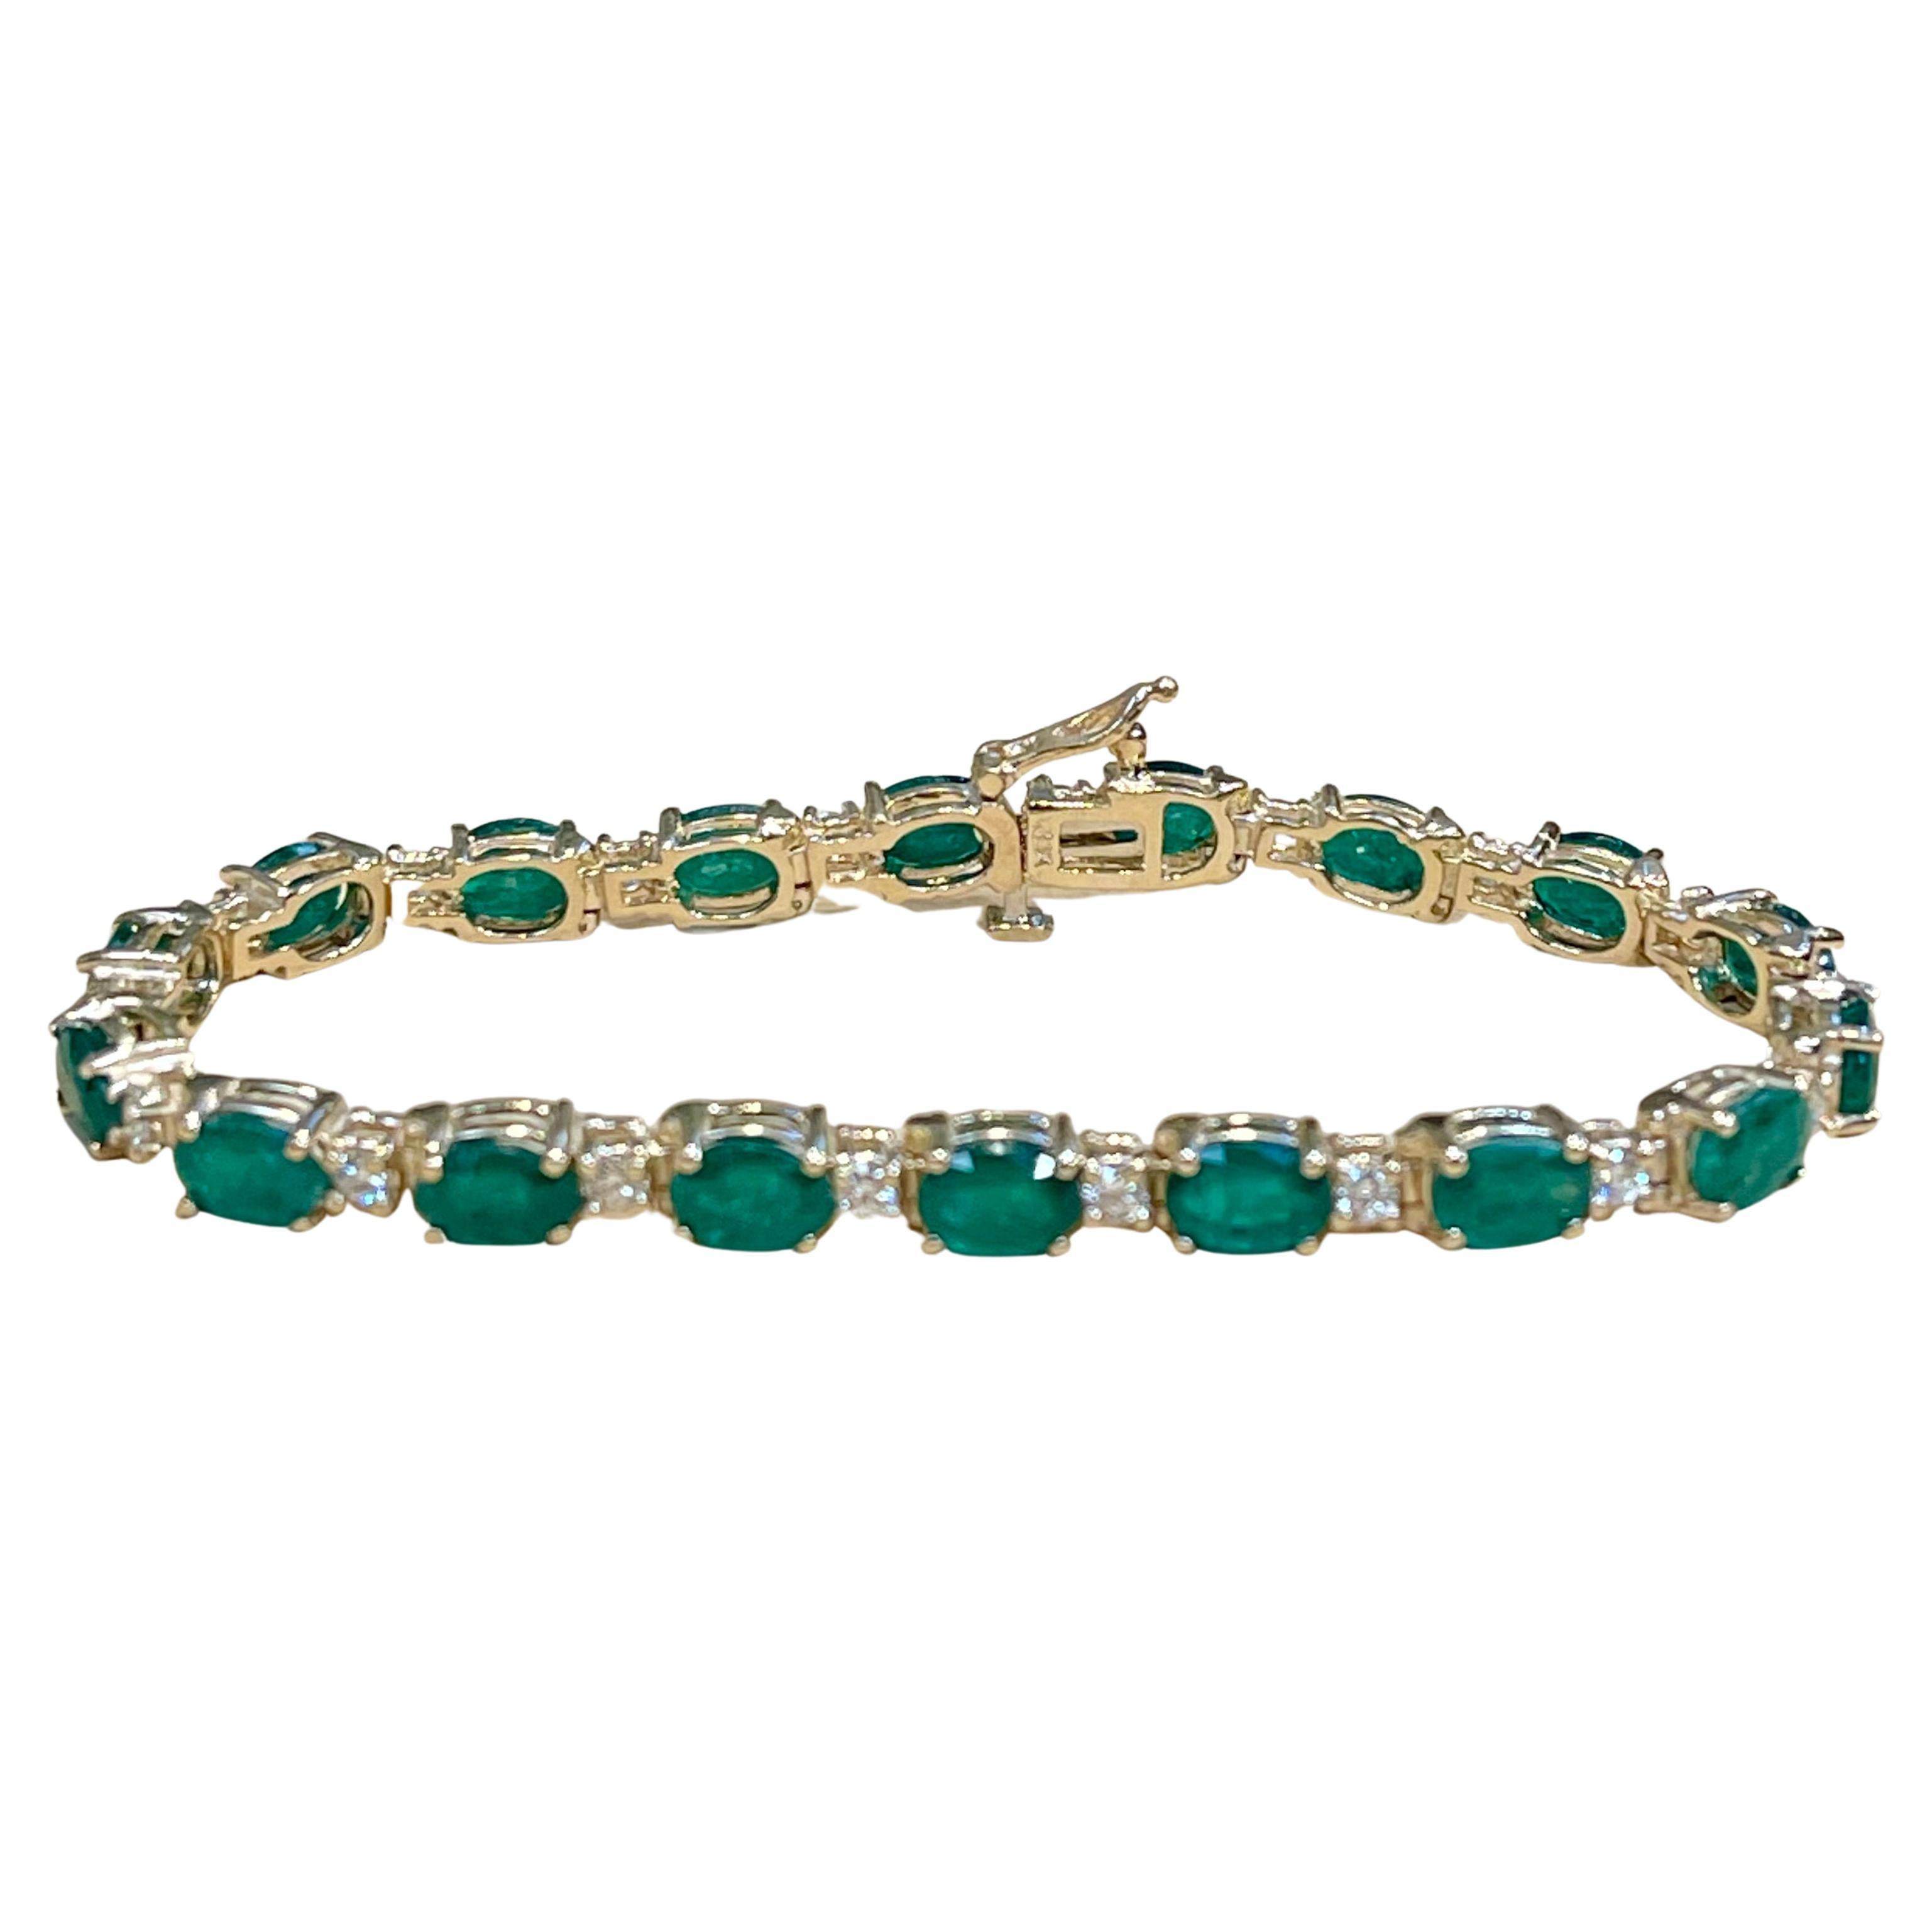 Oval Cut 16 Carat Natural Emerald & Diamond Cocktail Tennis Bracelet 14 Karat Yellow Gold